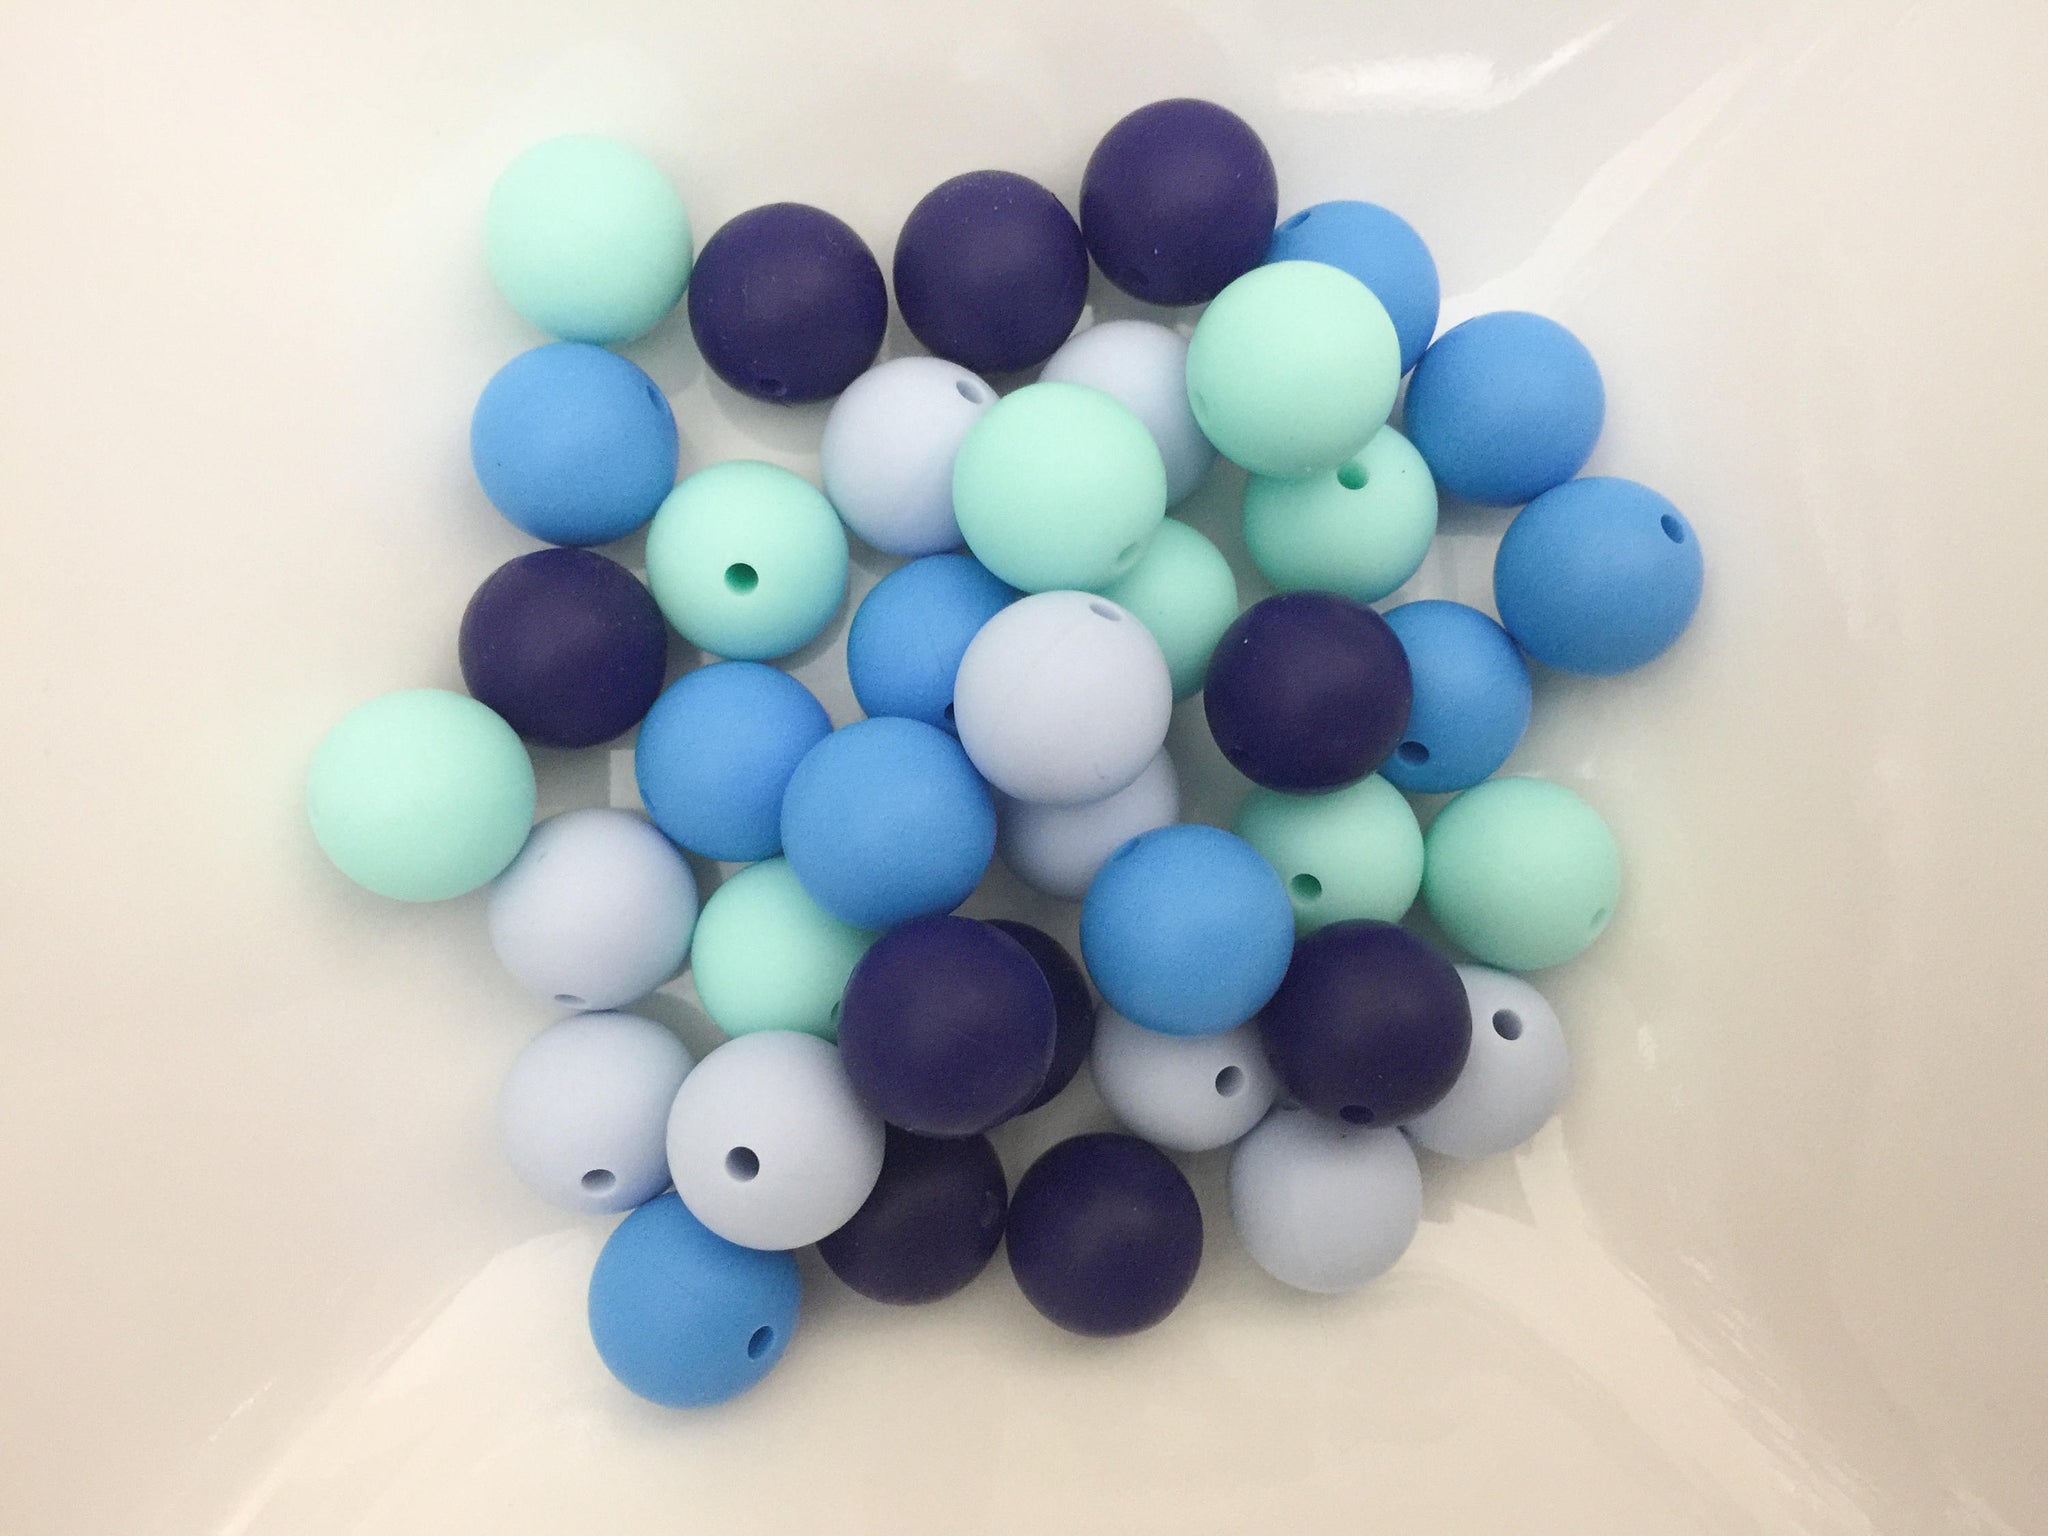 40 Bulk Silicone Beads - Blues